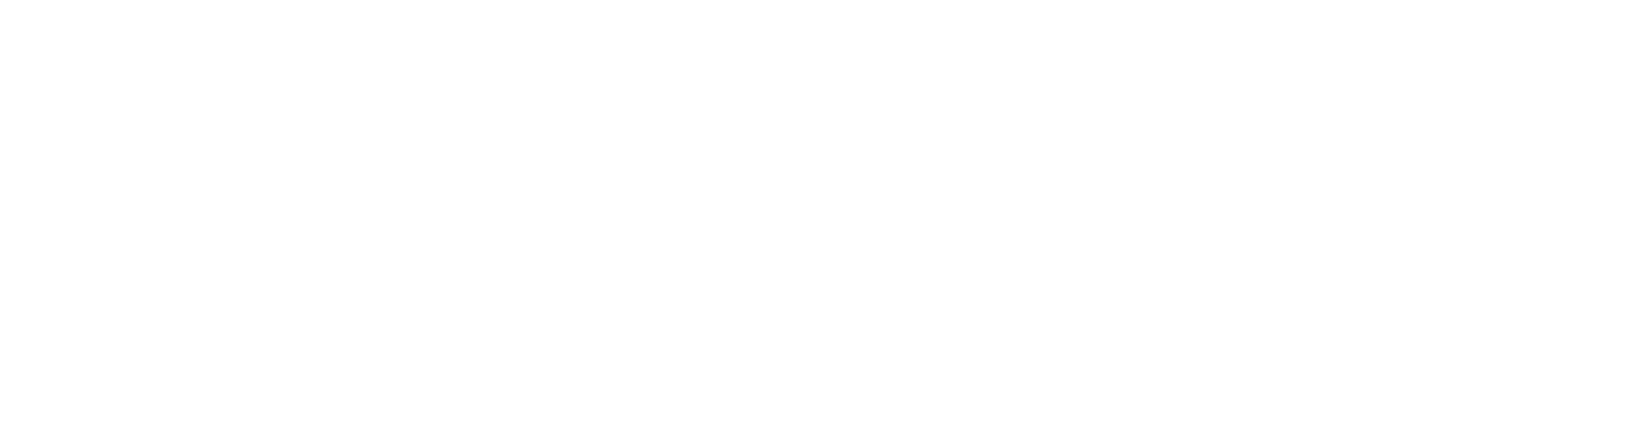 Port Augusta Secondary School Curriculum